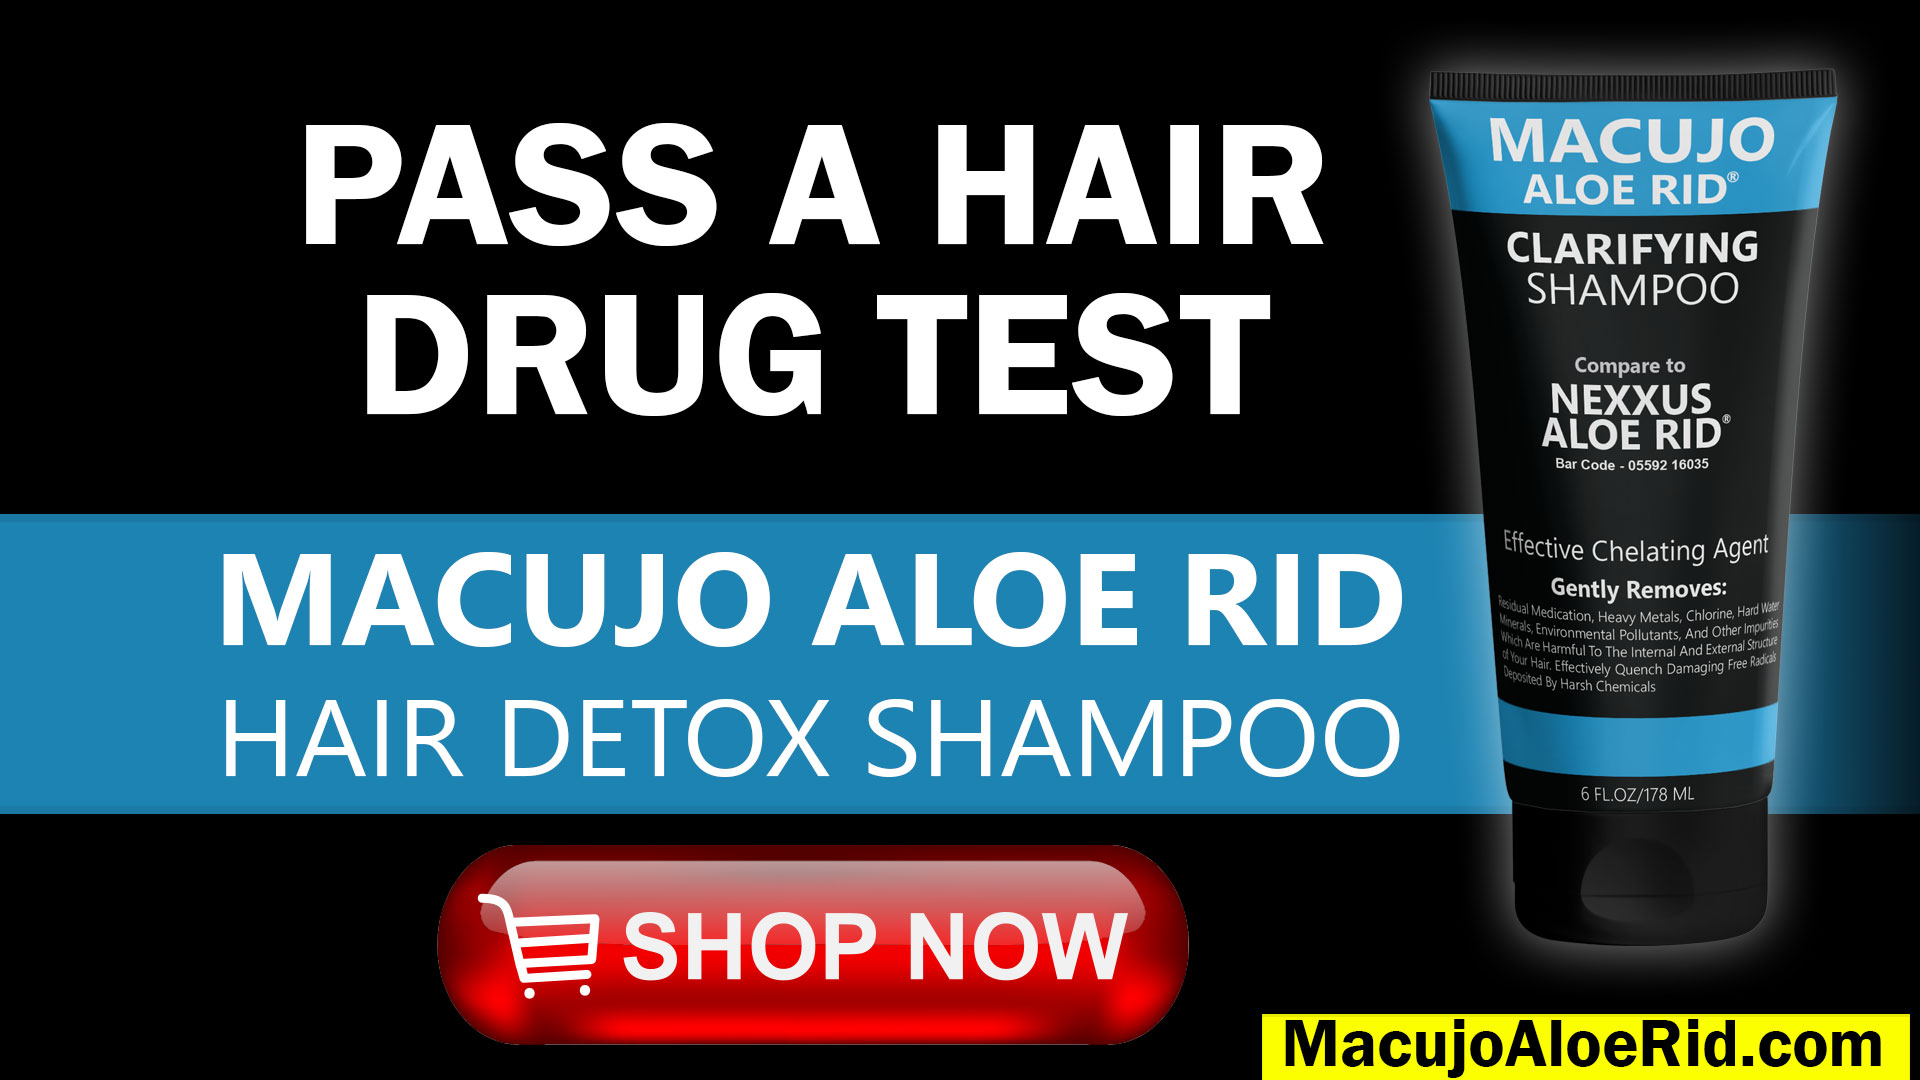 Macujo Aloe Rid Shampoo